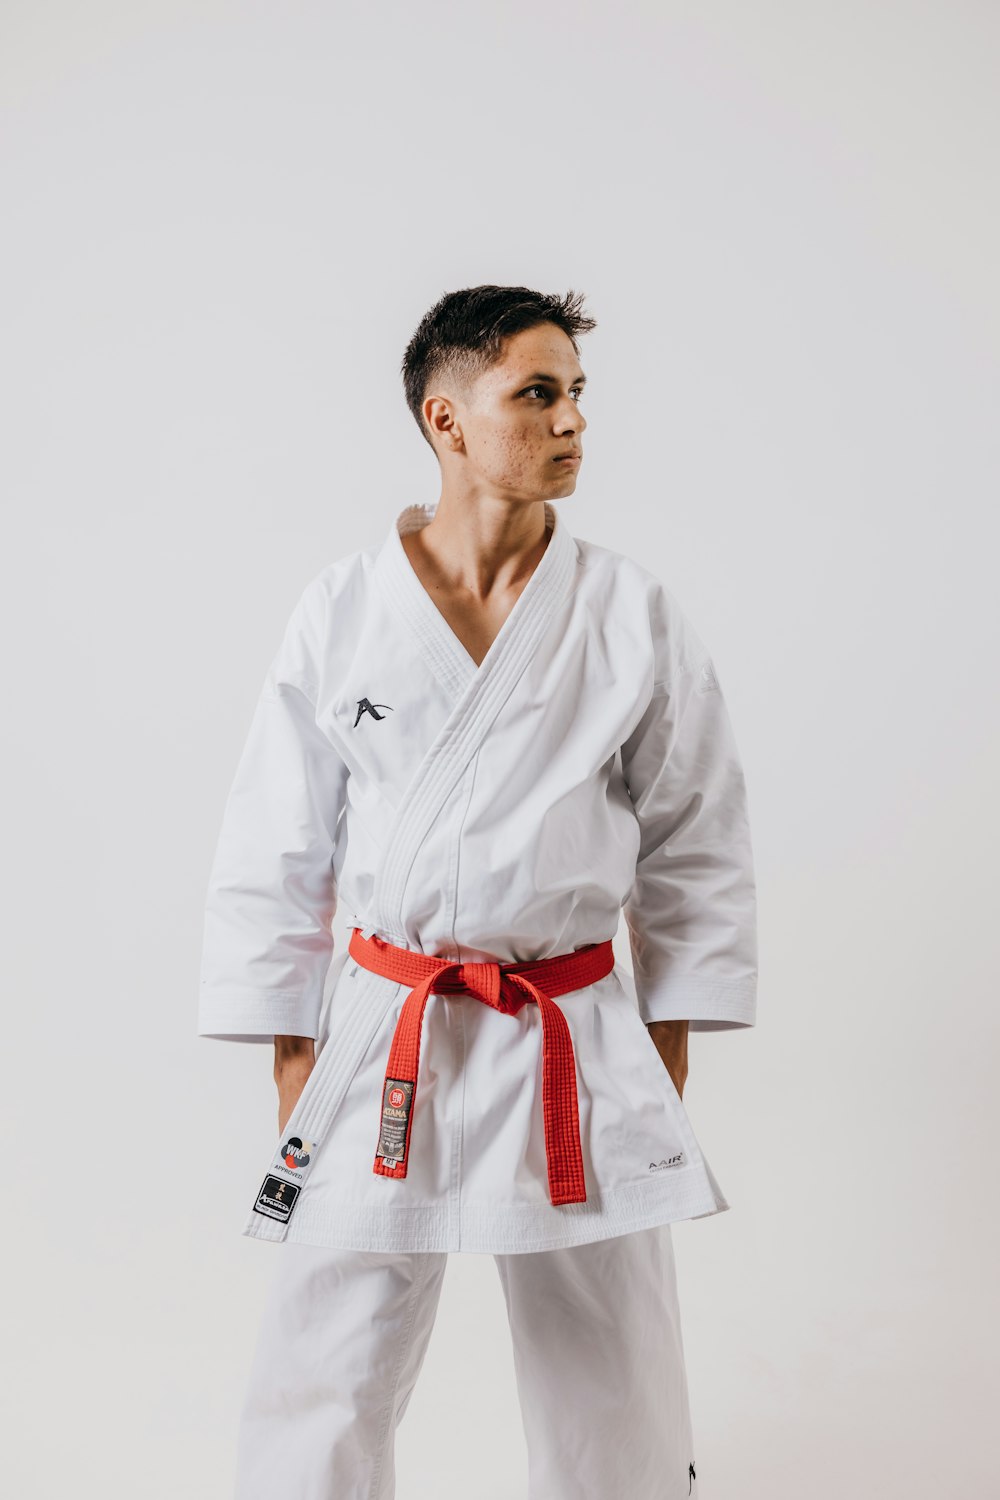 Subir cruzar Cambiable Foto Un hombre con un traje blanco de karate con un cinturón rojo – Imagen  Hombre gratis en Unsplash